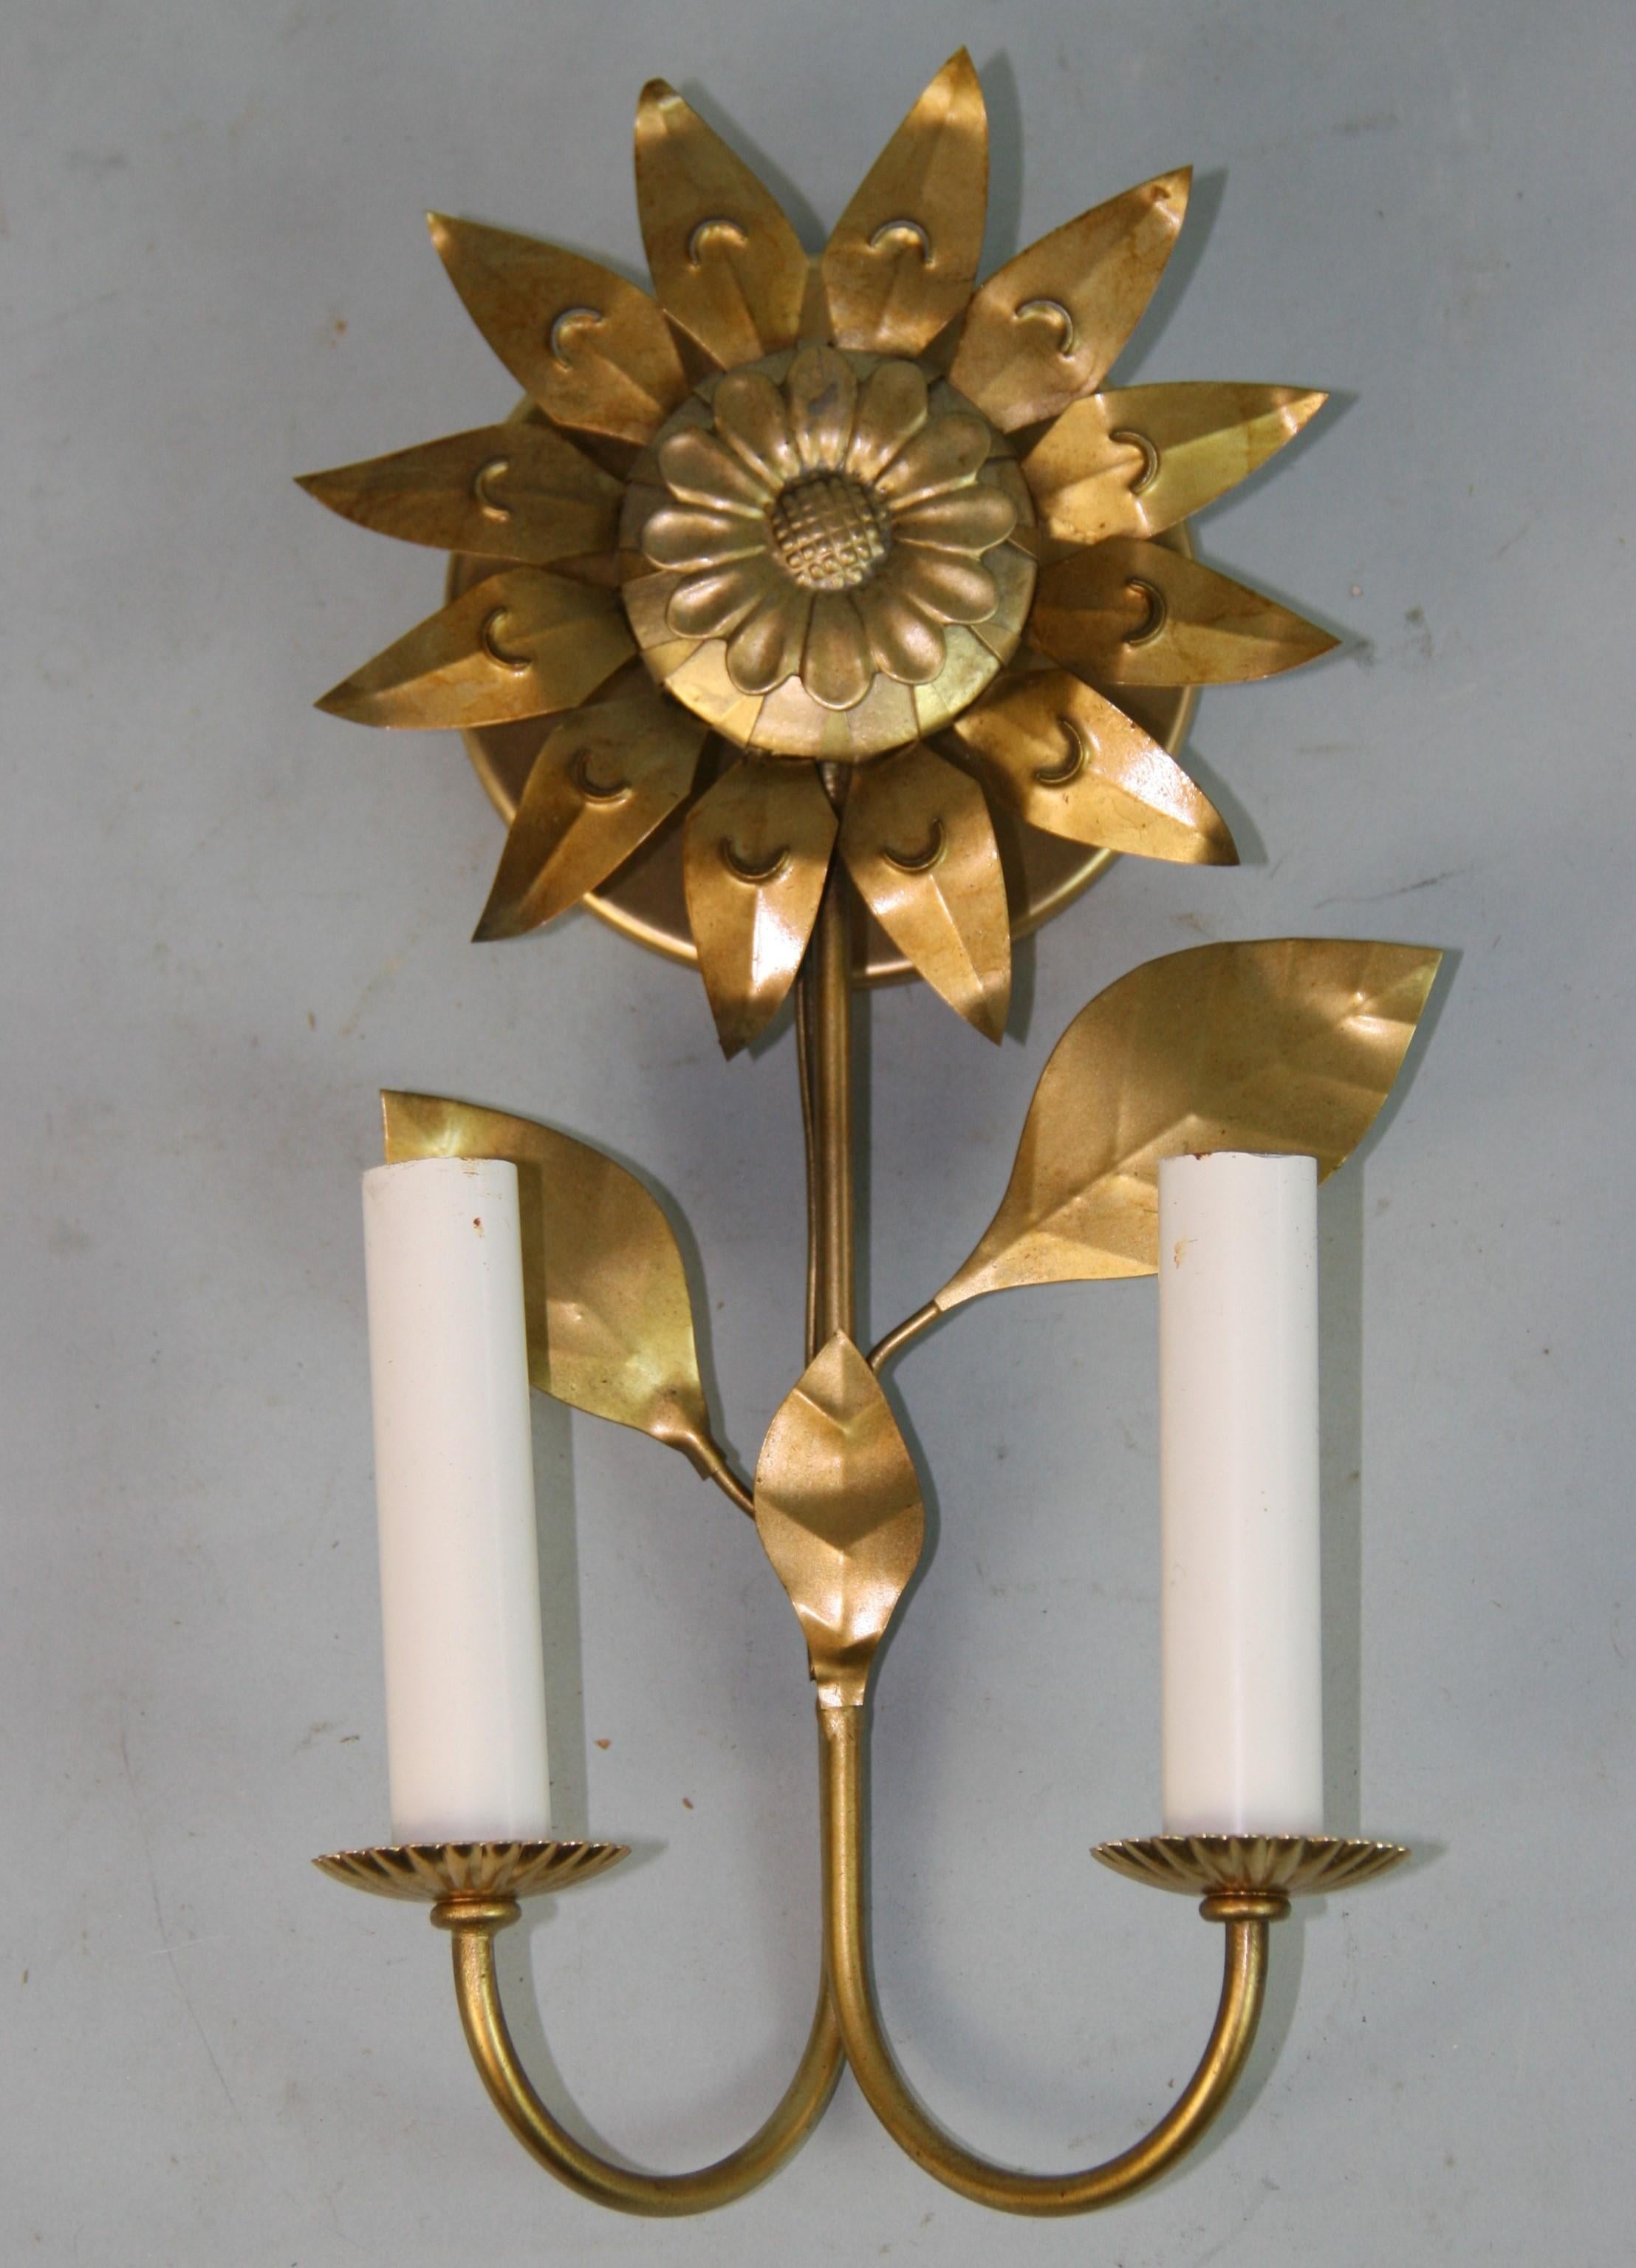 1568 Paar französische 2-Licht-Sonnenblumen-Wandleuchter
Für 40-Watt-Kandelaber-Glühbirne geeignet
Rewired for US